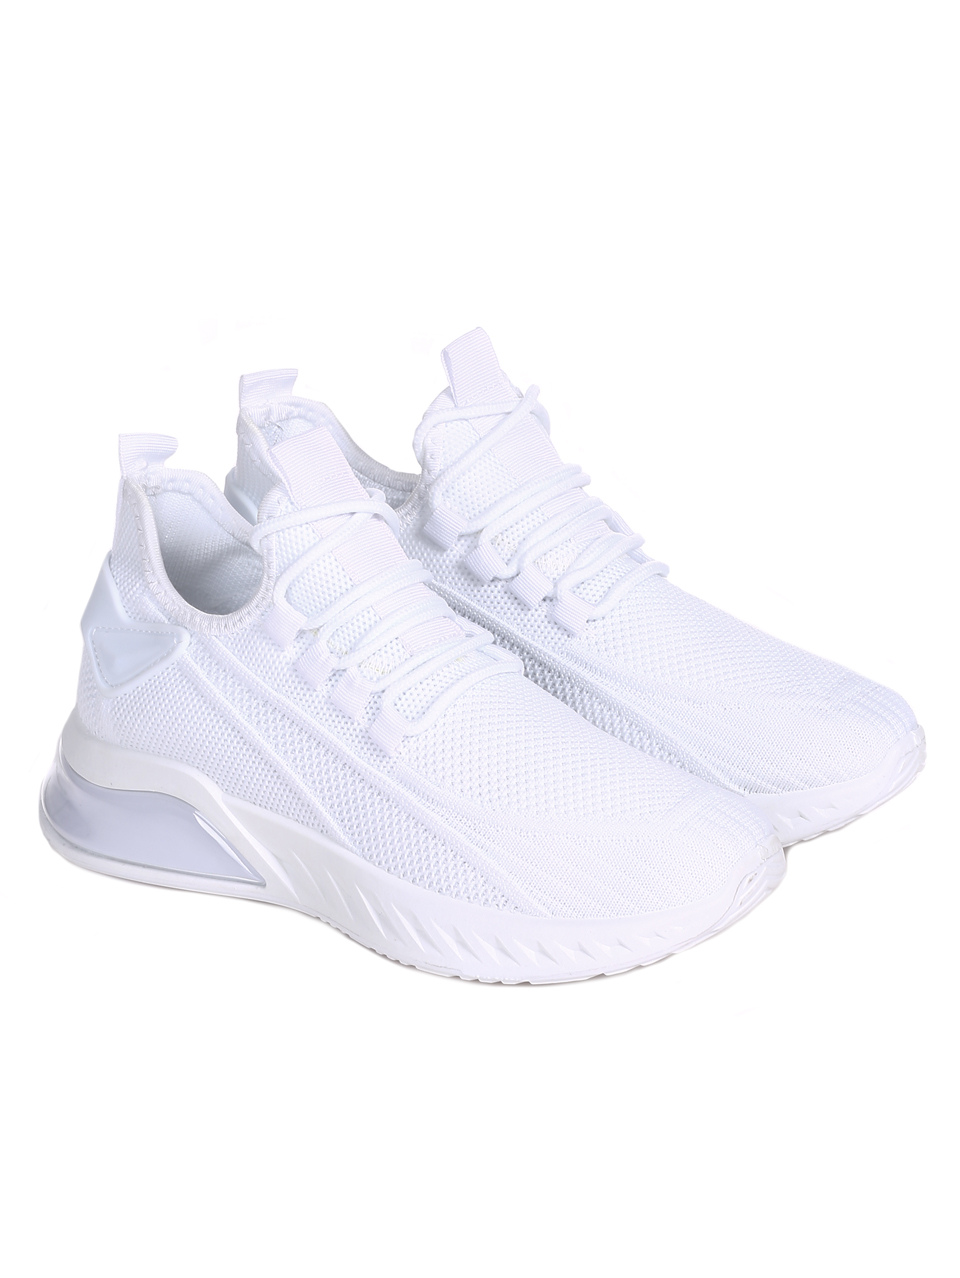 Ежедневни дамски обувки в бяло 3U-22052 white